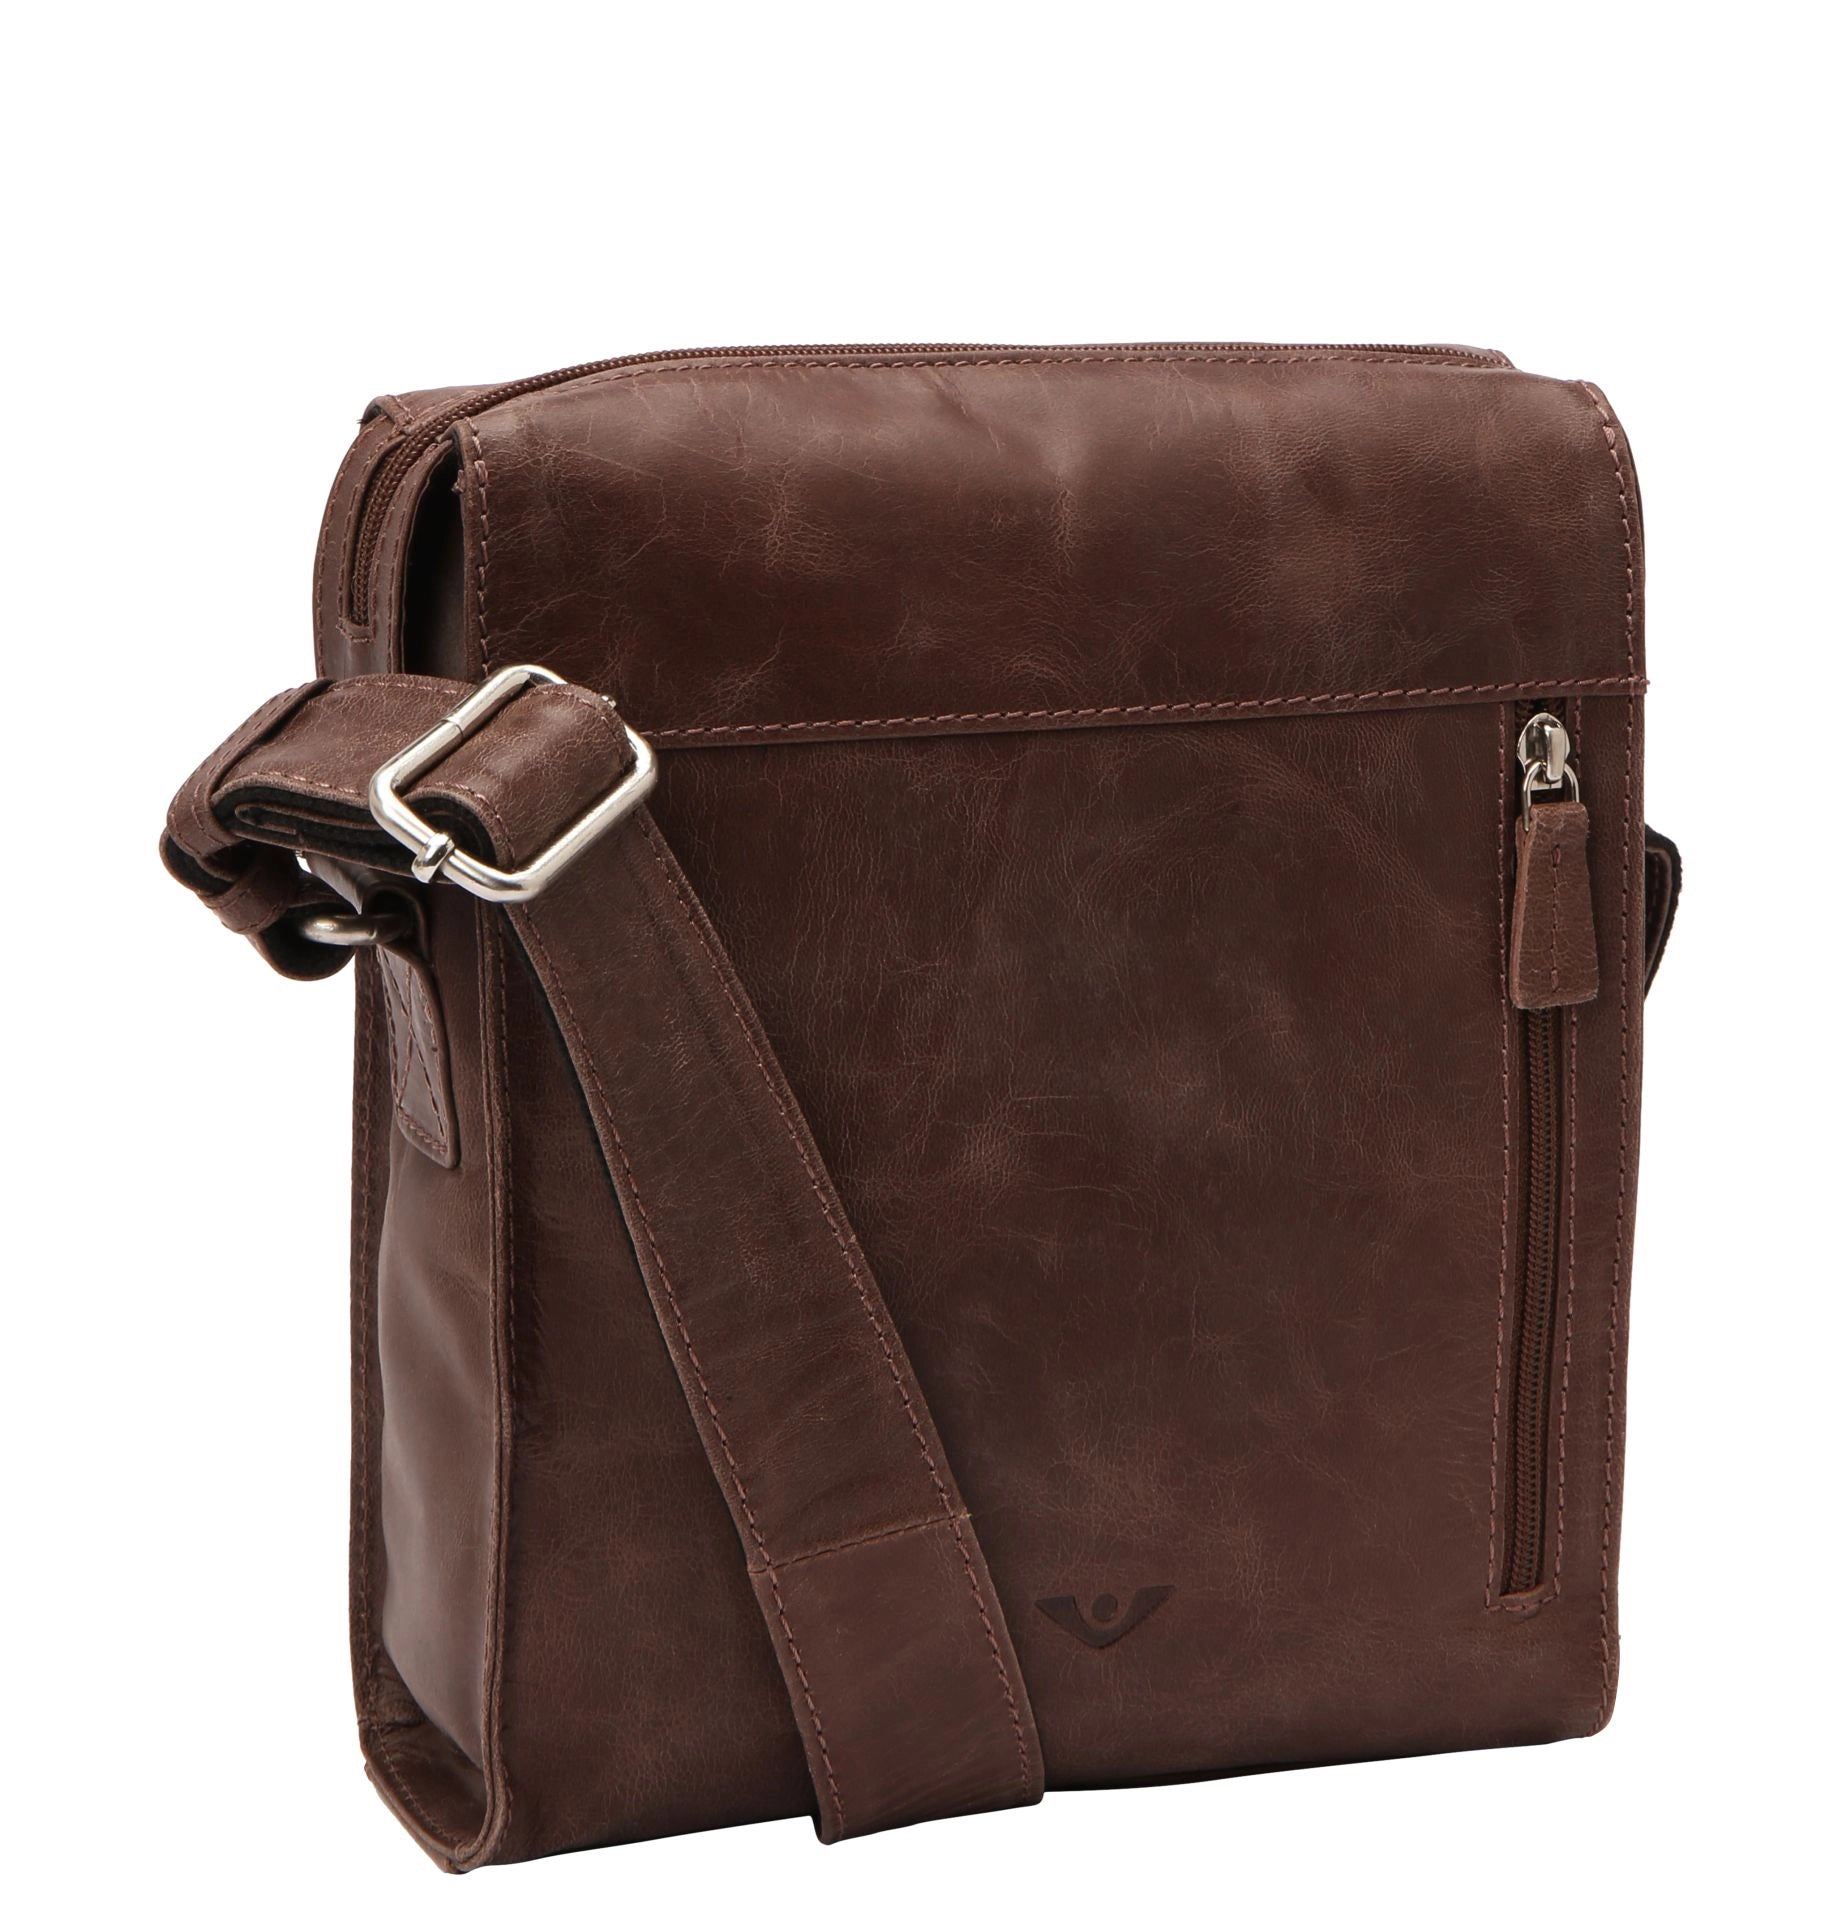 VOi-Design City Cowboy Clark sac bandoulière 24 cm - marron